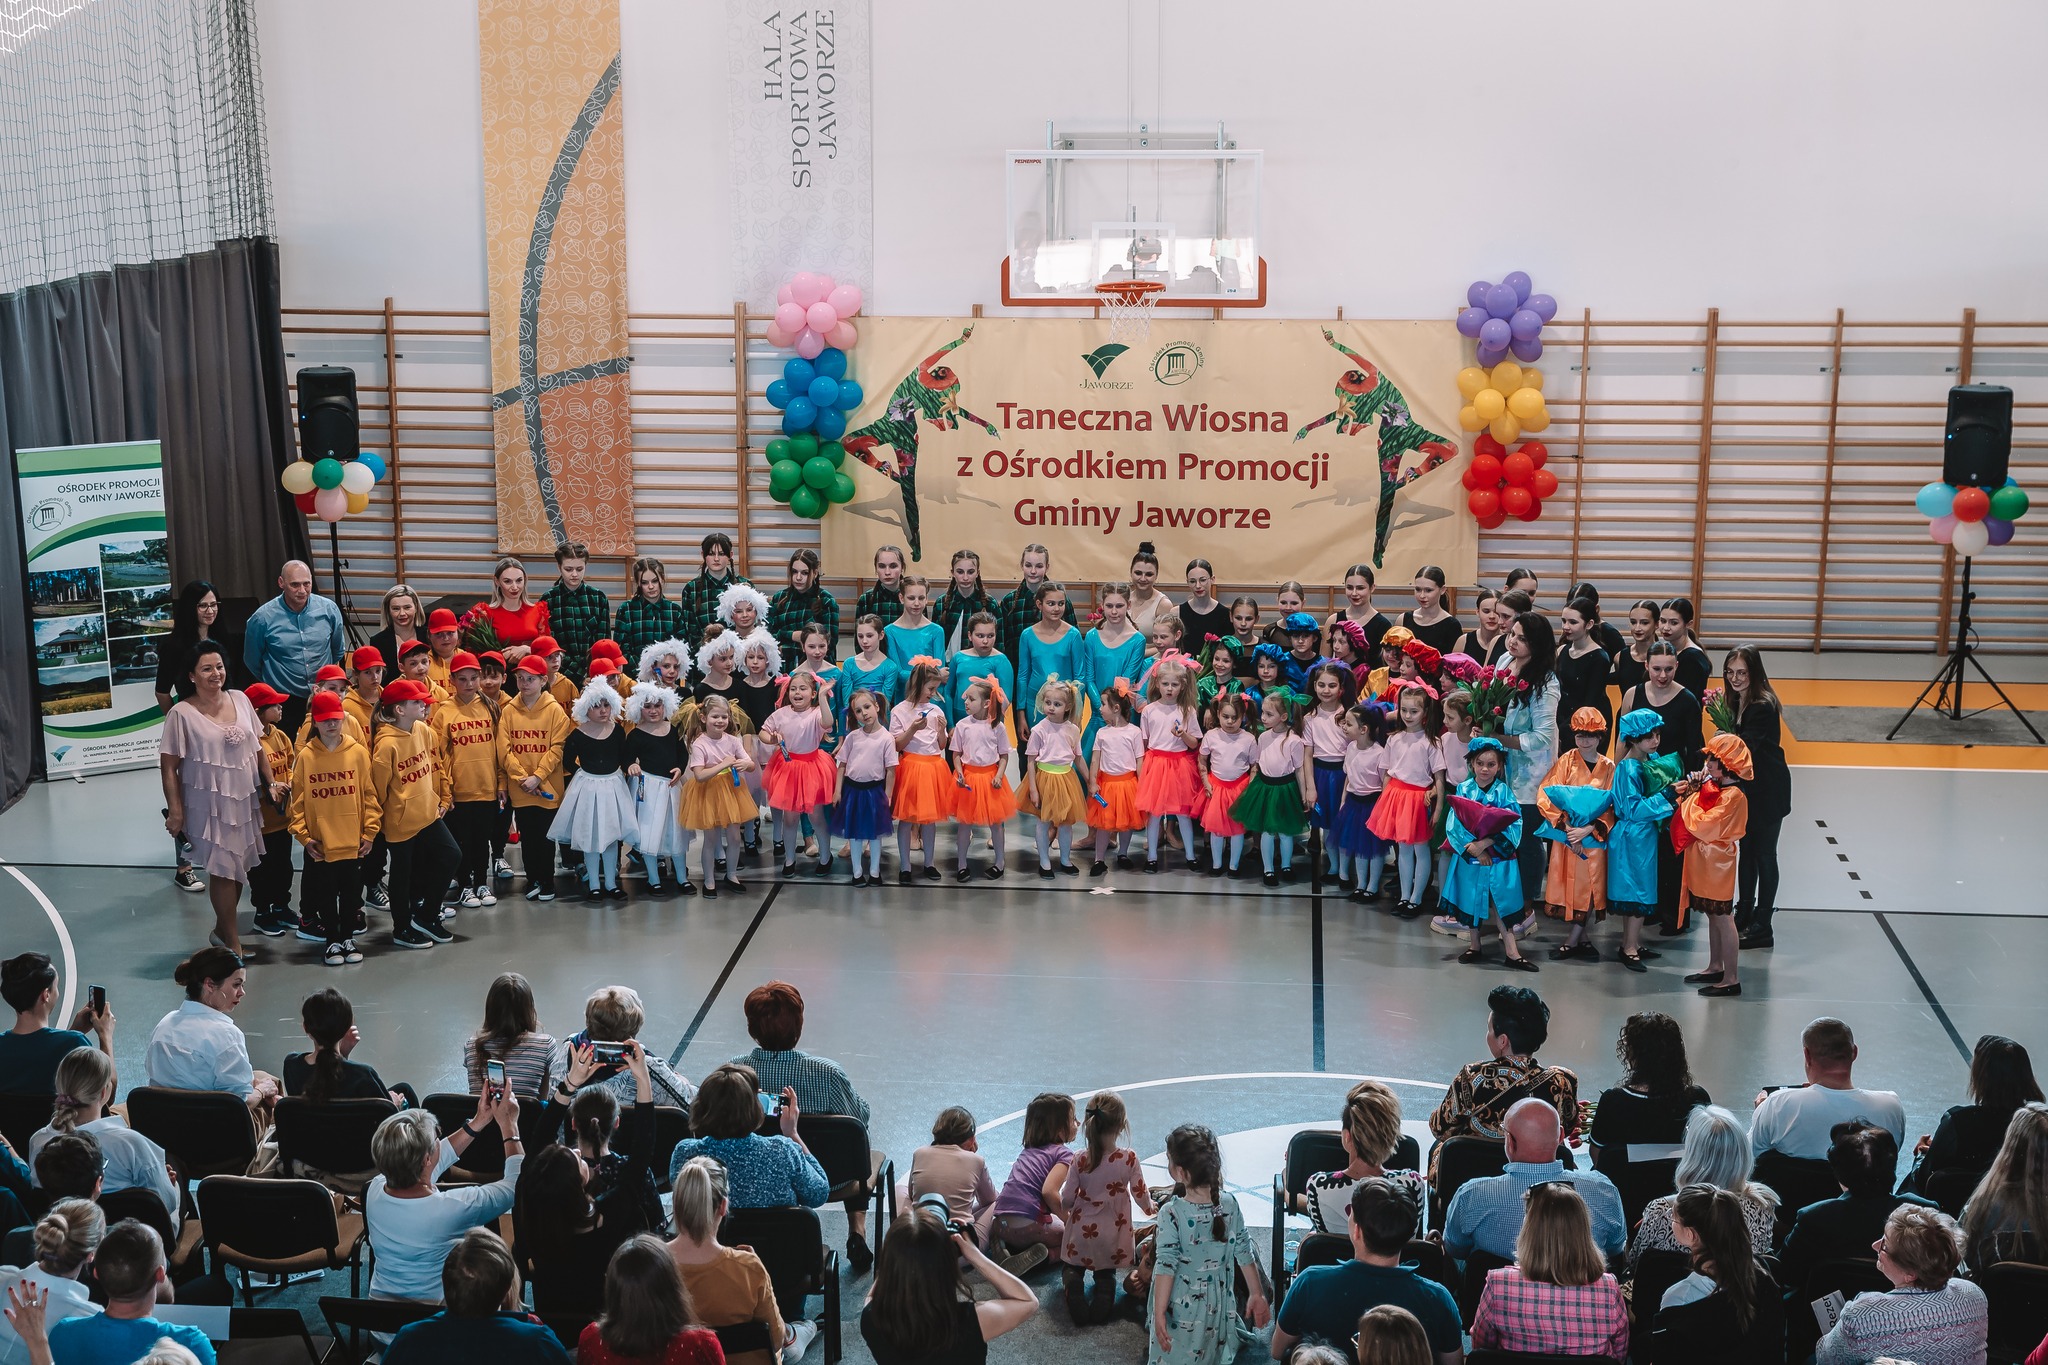 Grupa kilkudziesięcioro dzieci ubranych w różnorakie stroje na hali sportowej.